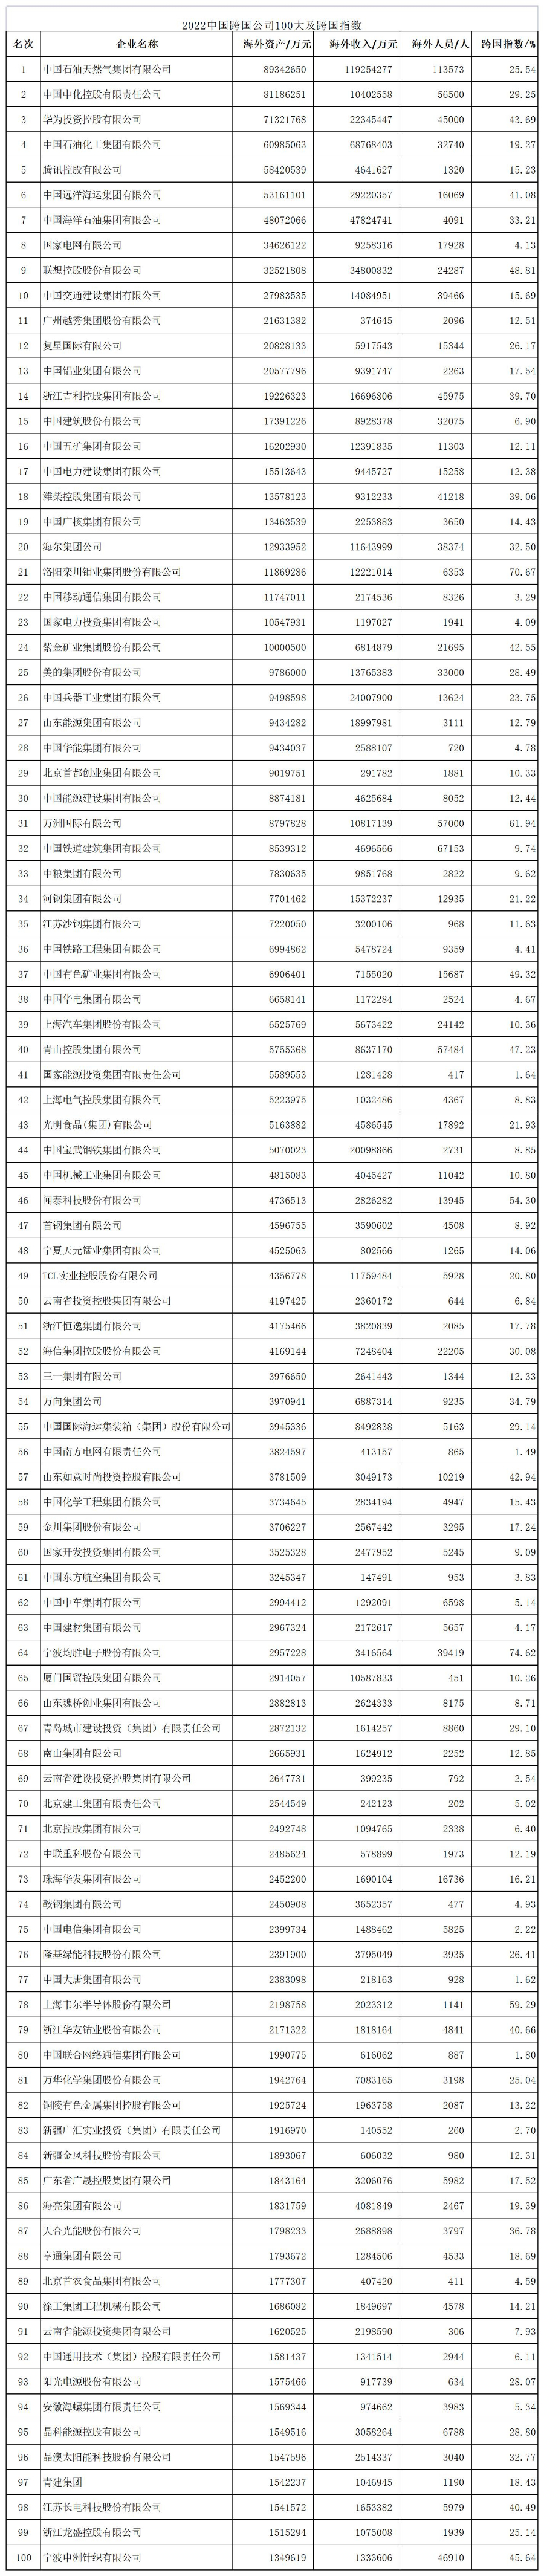 2022年发布“中国跨国公司100大”榜单